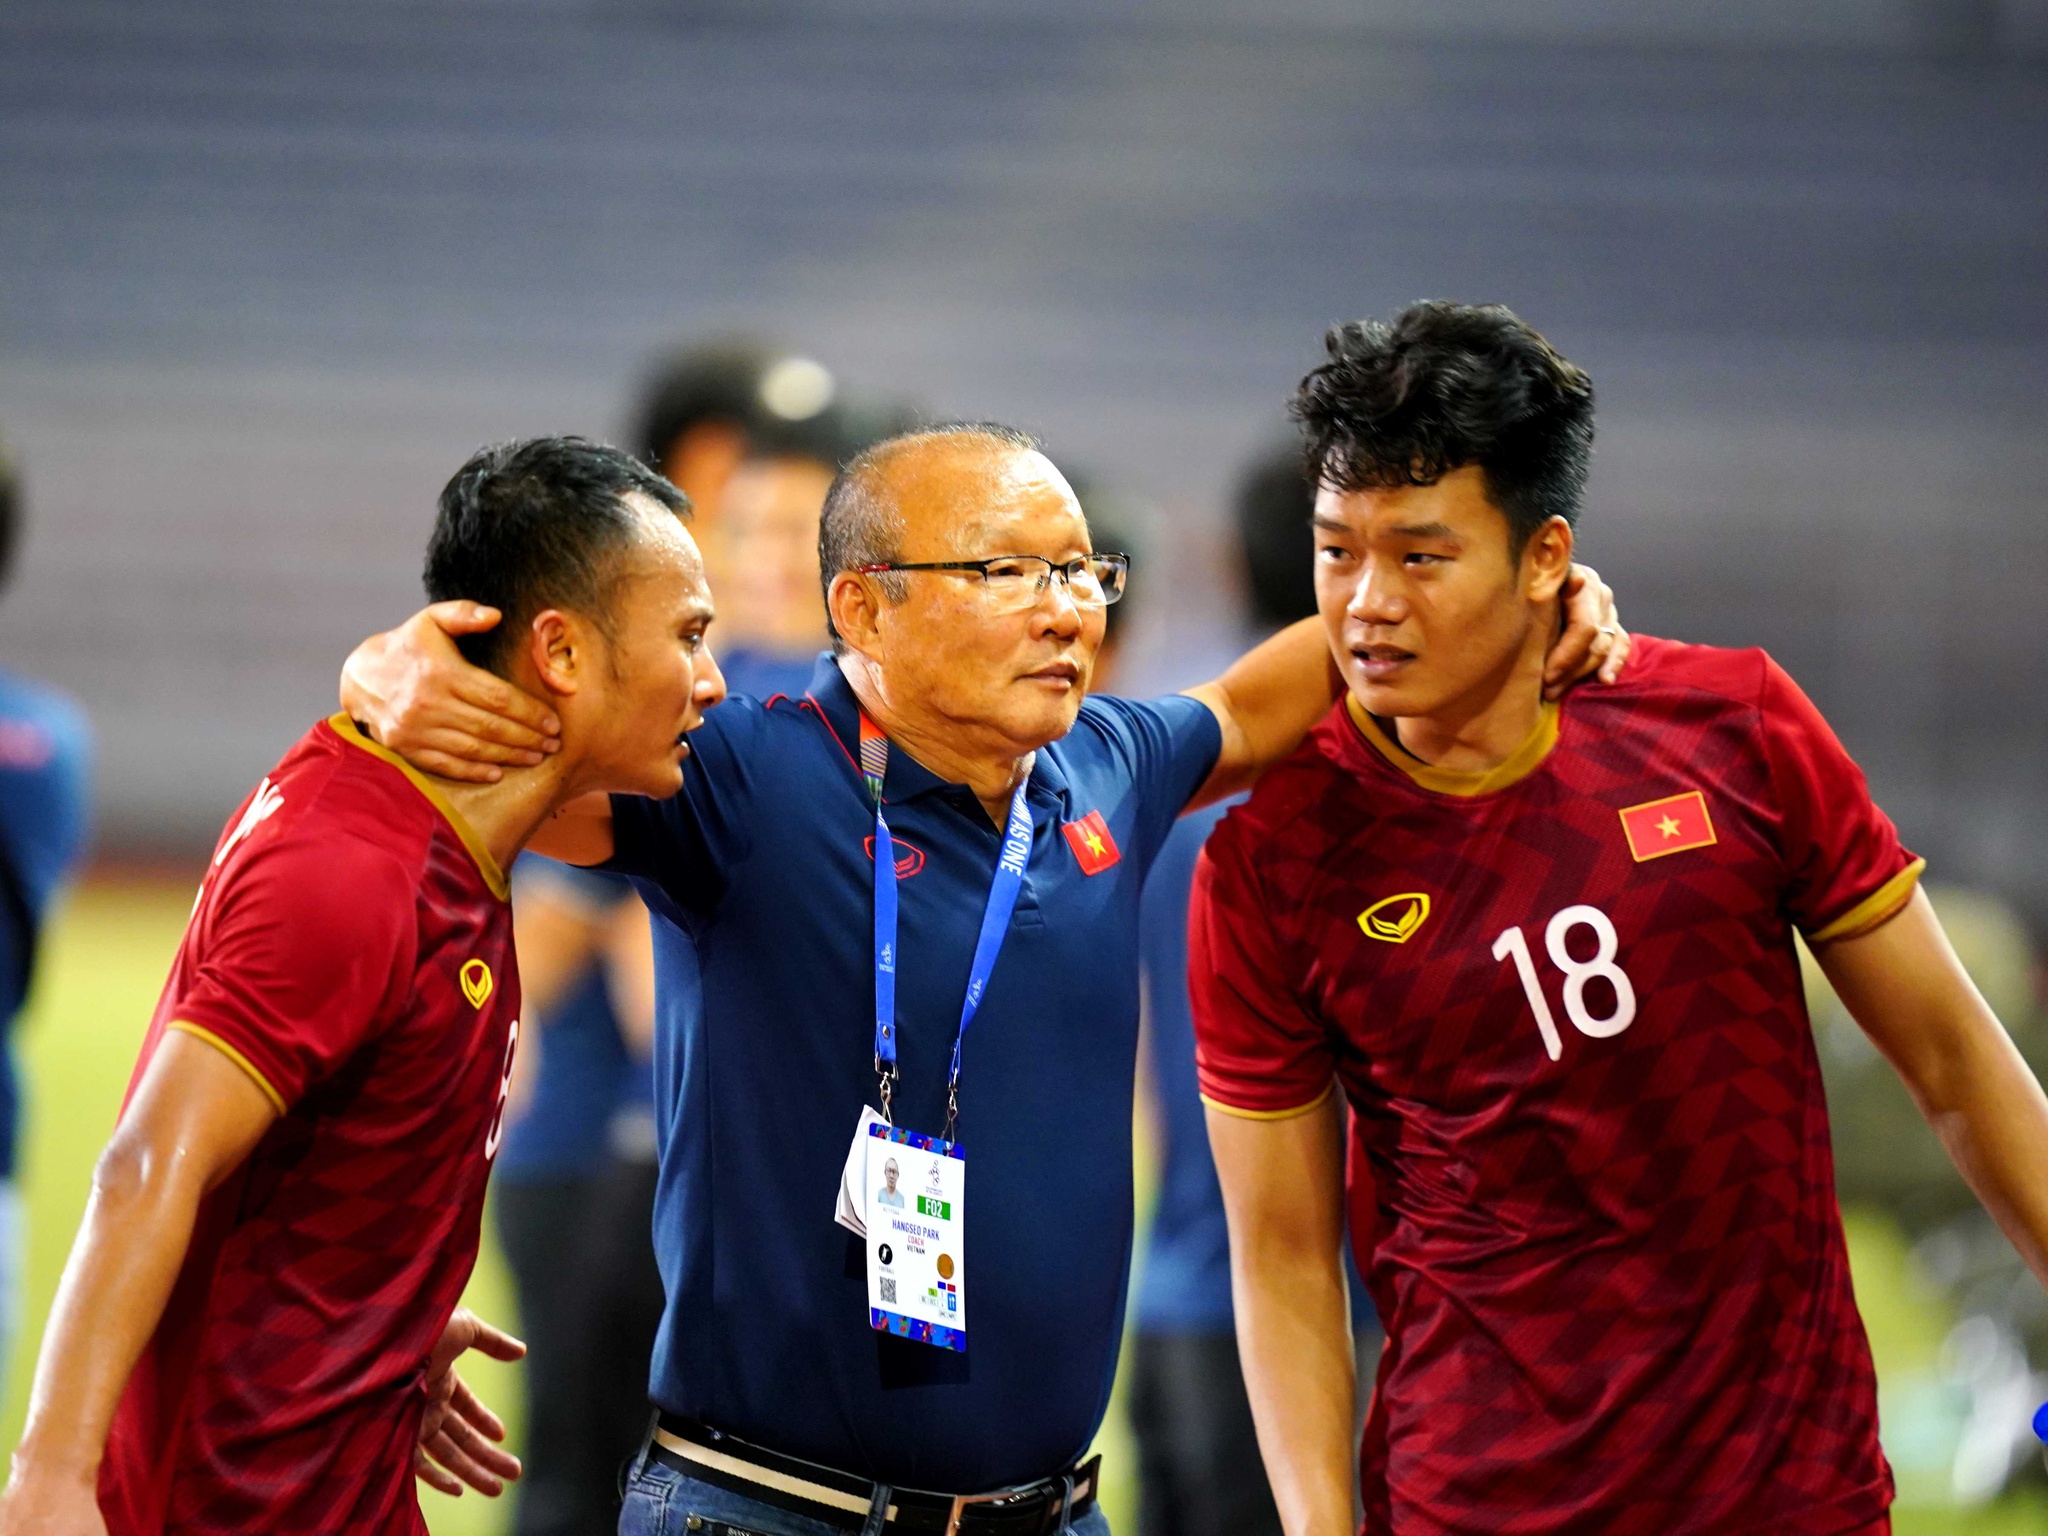 HLV Park Hang Seo chính thức trở thành huấn luyện trưởng của Đội tuyển Việt Nam